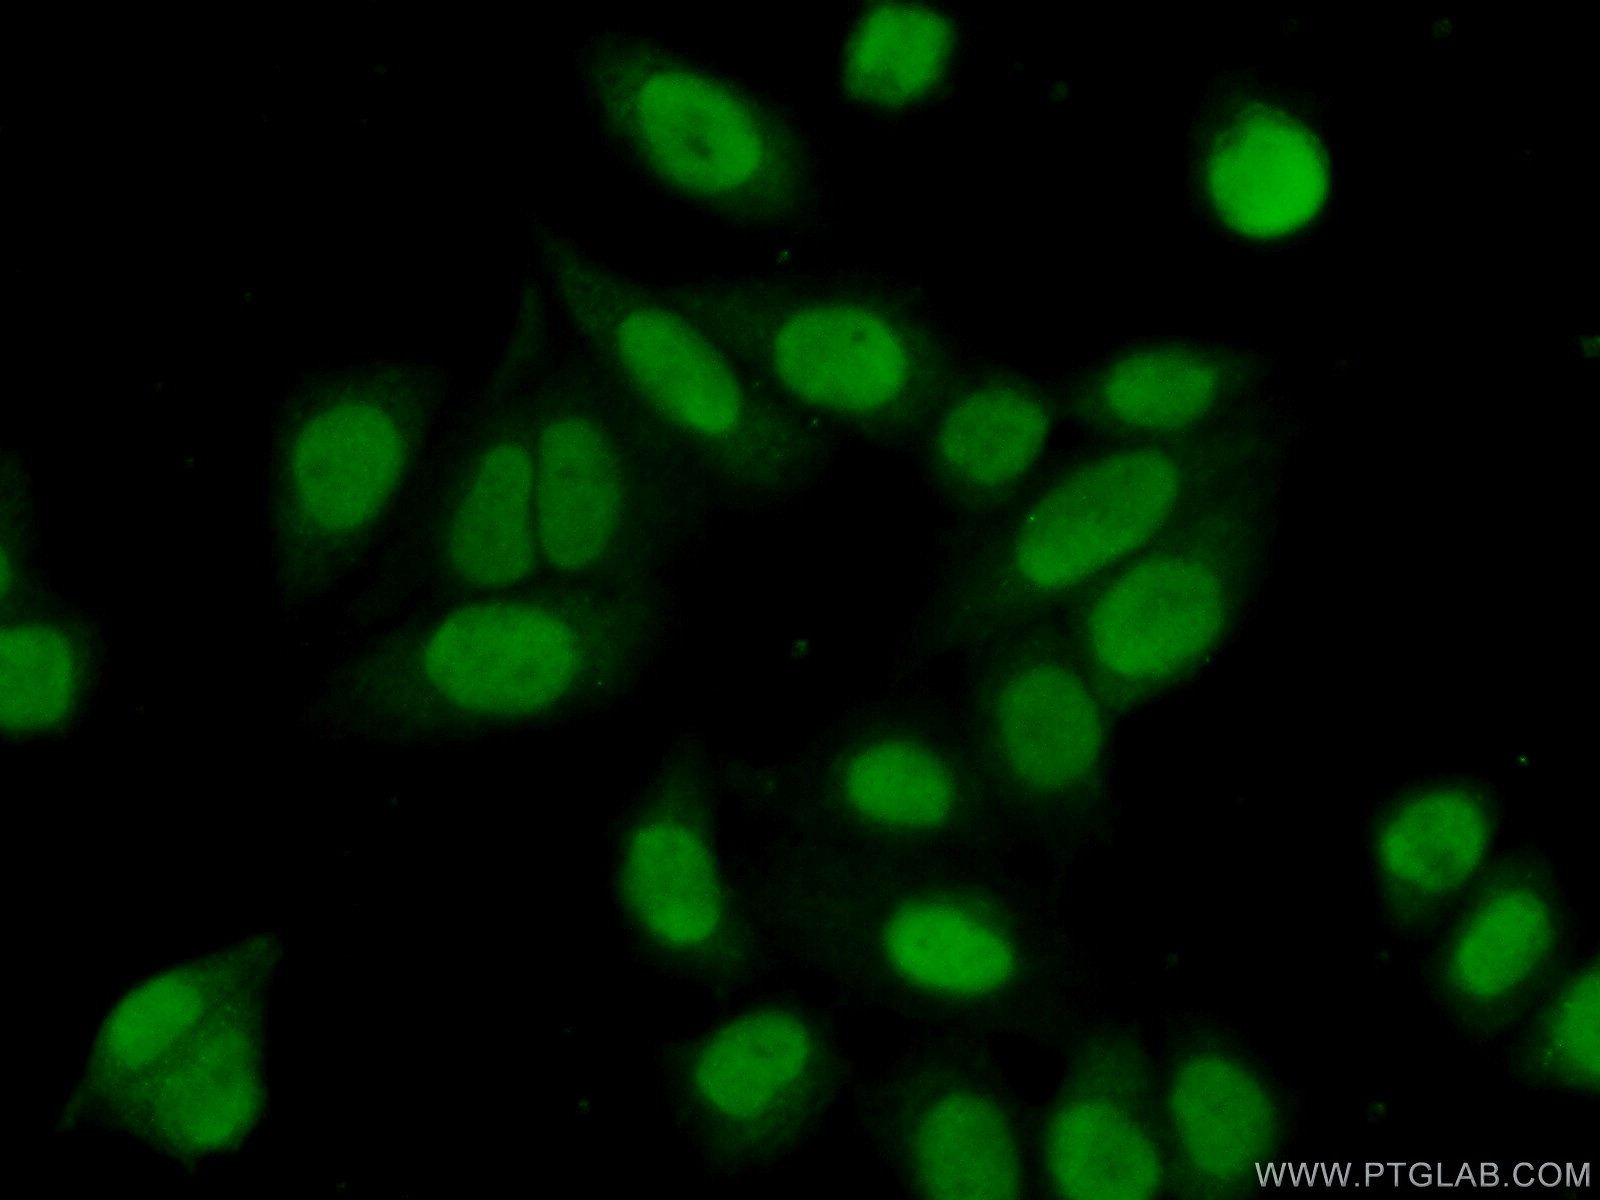 14950-1-AP;HeLa cells